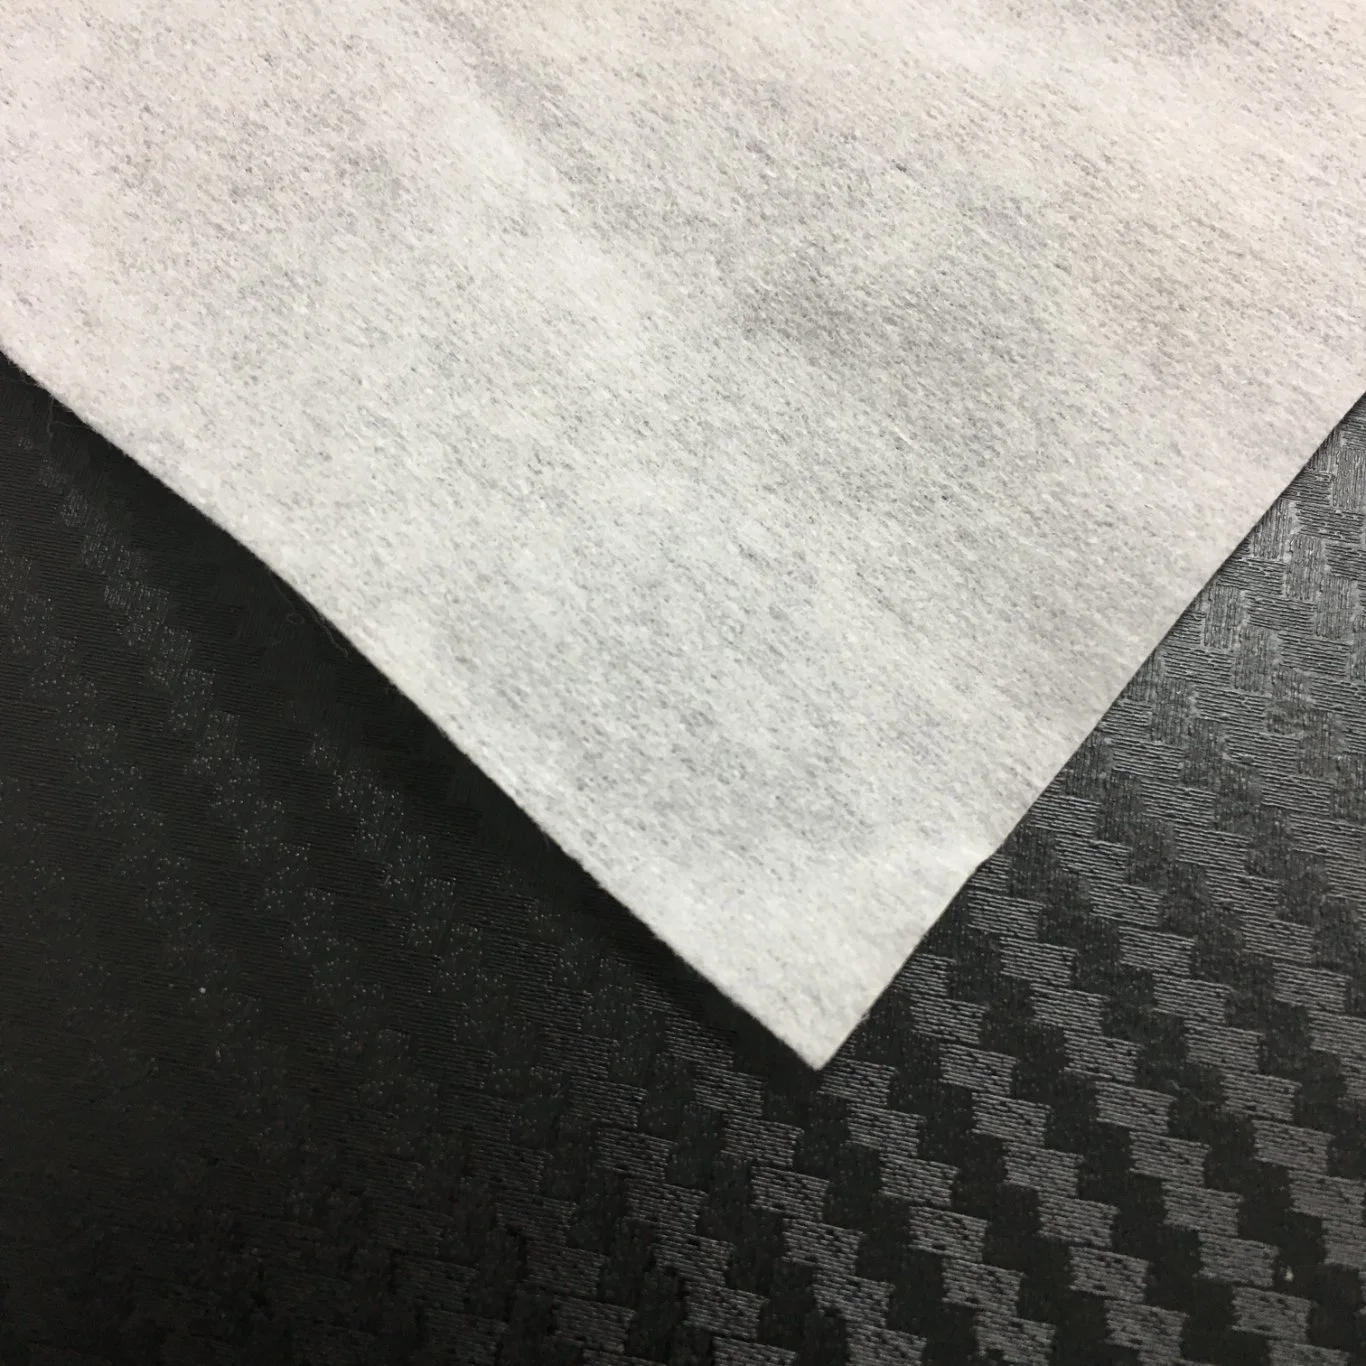 White 55%Cellulose45%Polyester Spunlace Nonwoven Cleanroom Class 10000 Cleaning Paper Wipes

Lingettes en papier de nettoyage en salle blanche en non-tissé de cellulose 55% polyester 45% spunlace de classe 10000